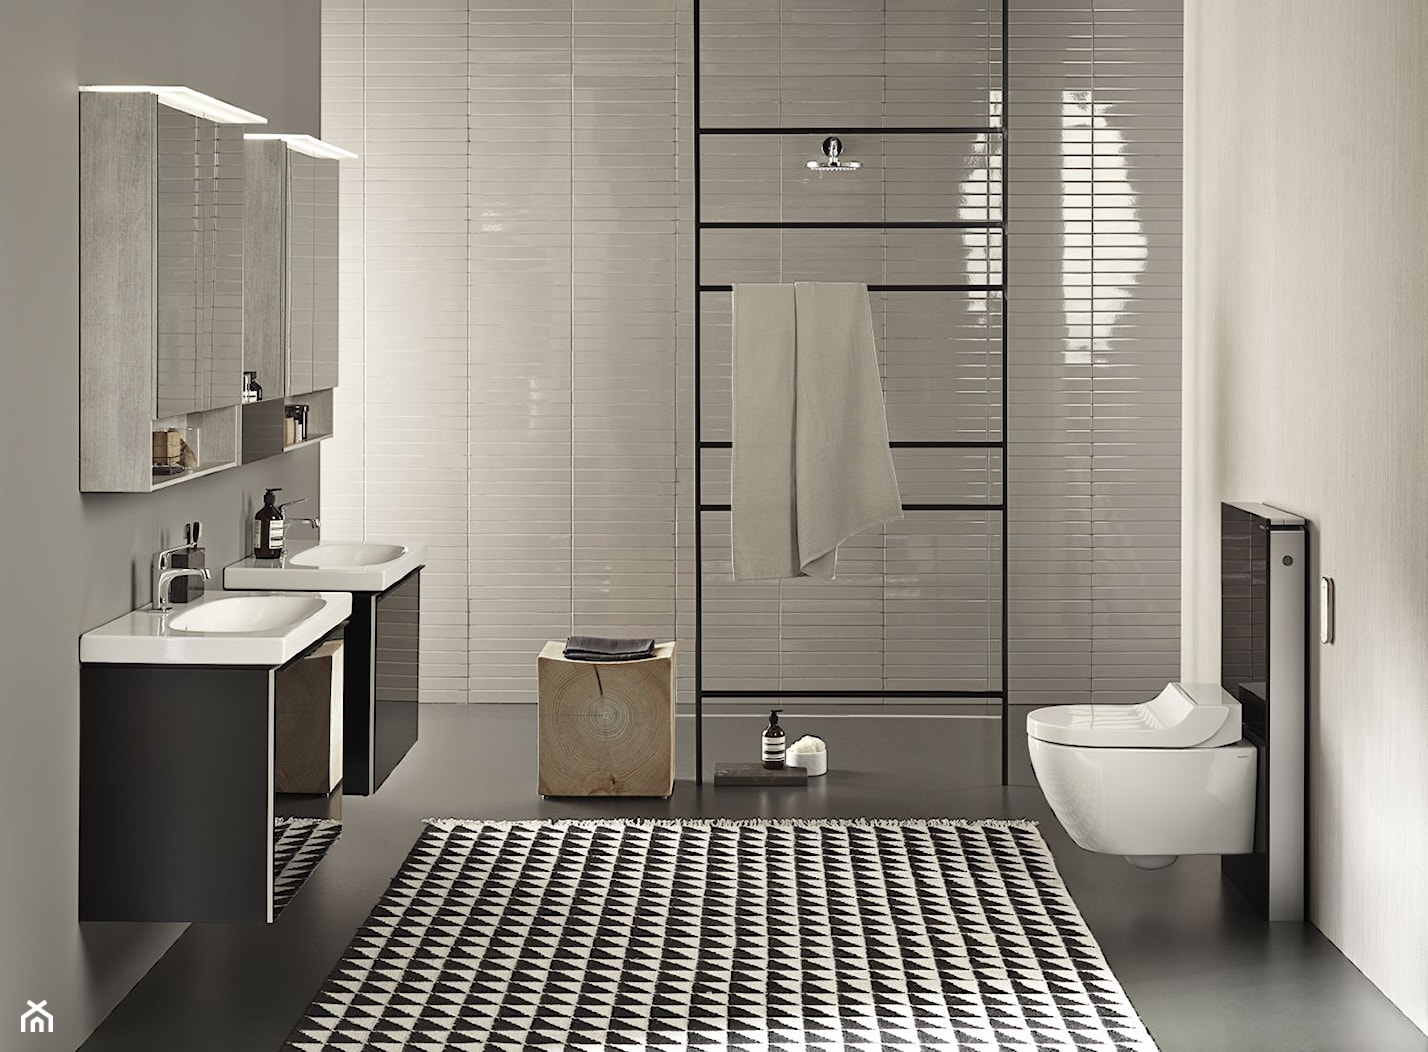 Geberit AquaClean Tuma - Duża łazienka, styl nowoczesny - zdjęcie od Geberit - Homebook